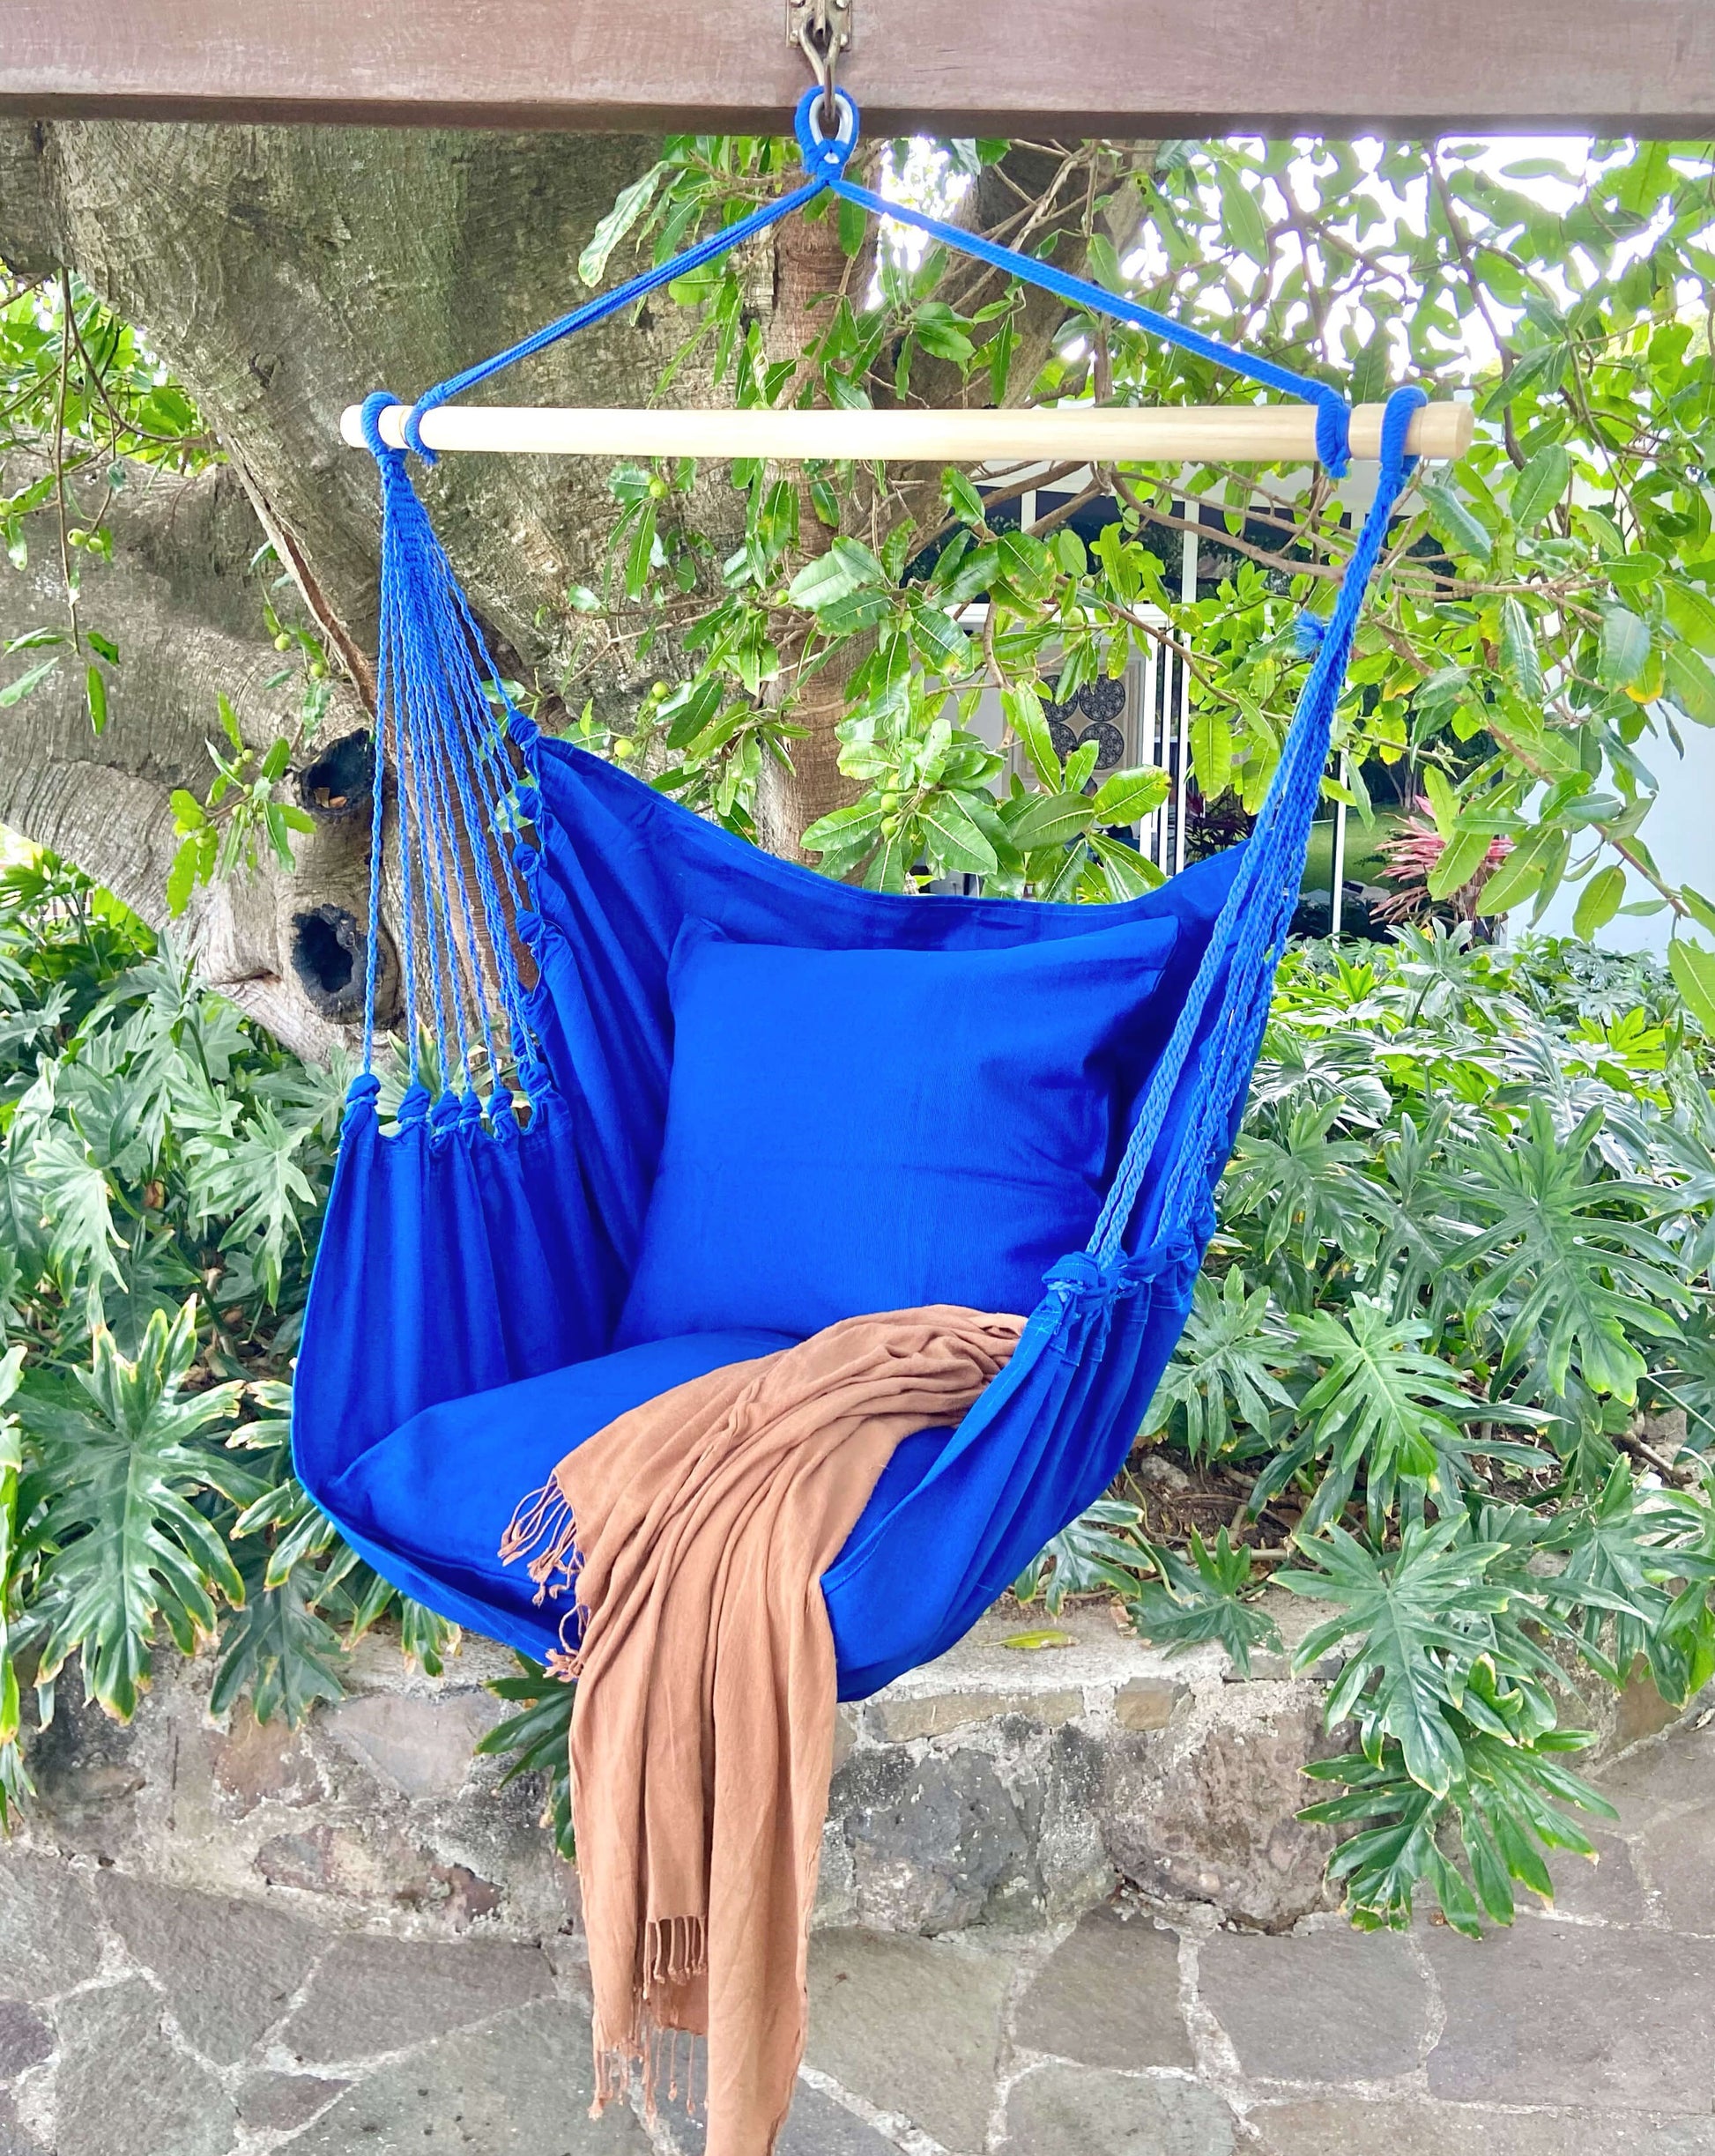 blue hammock with swing in a garden